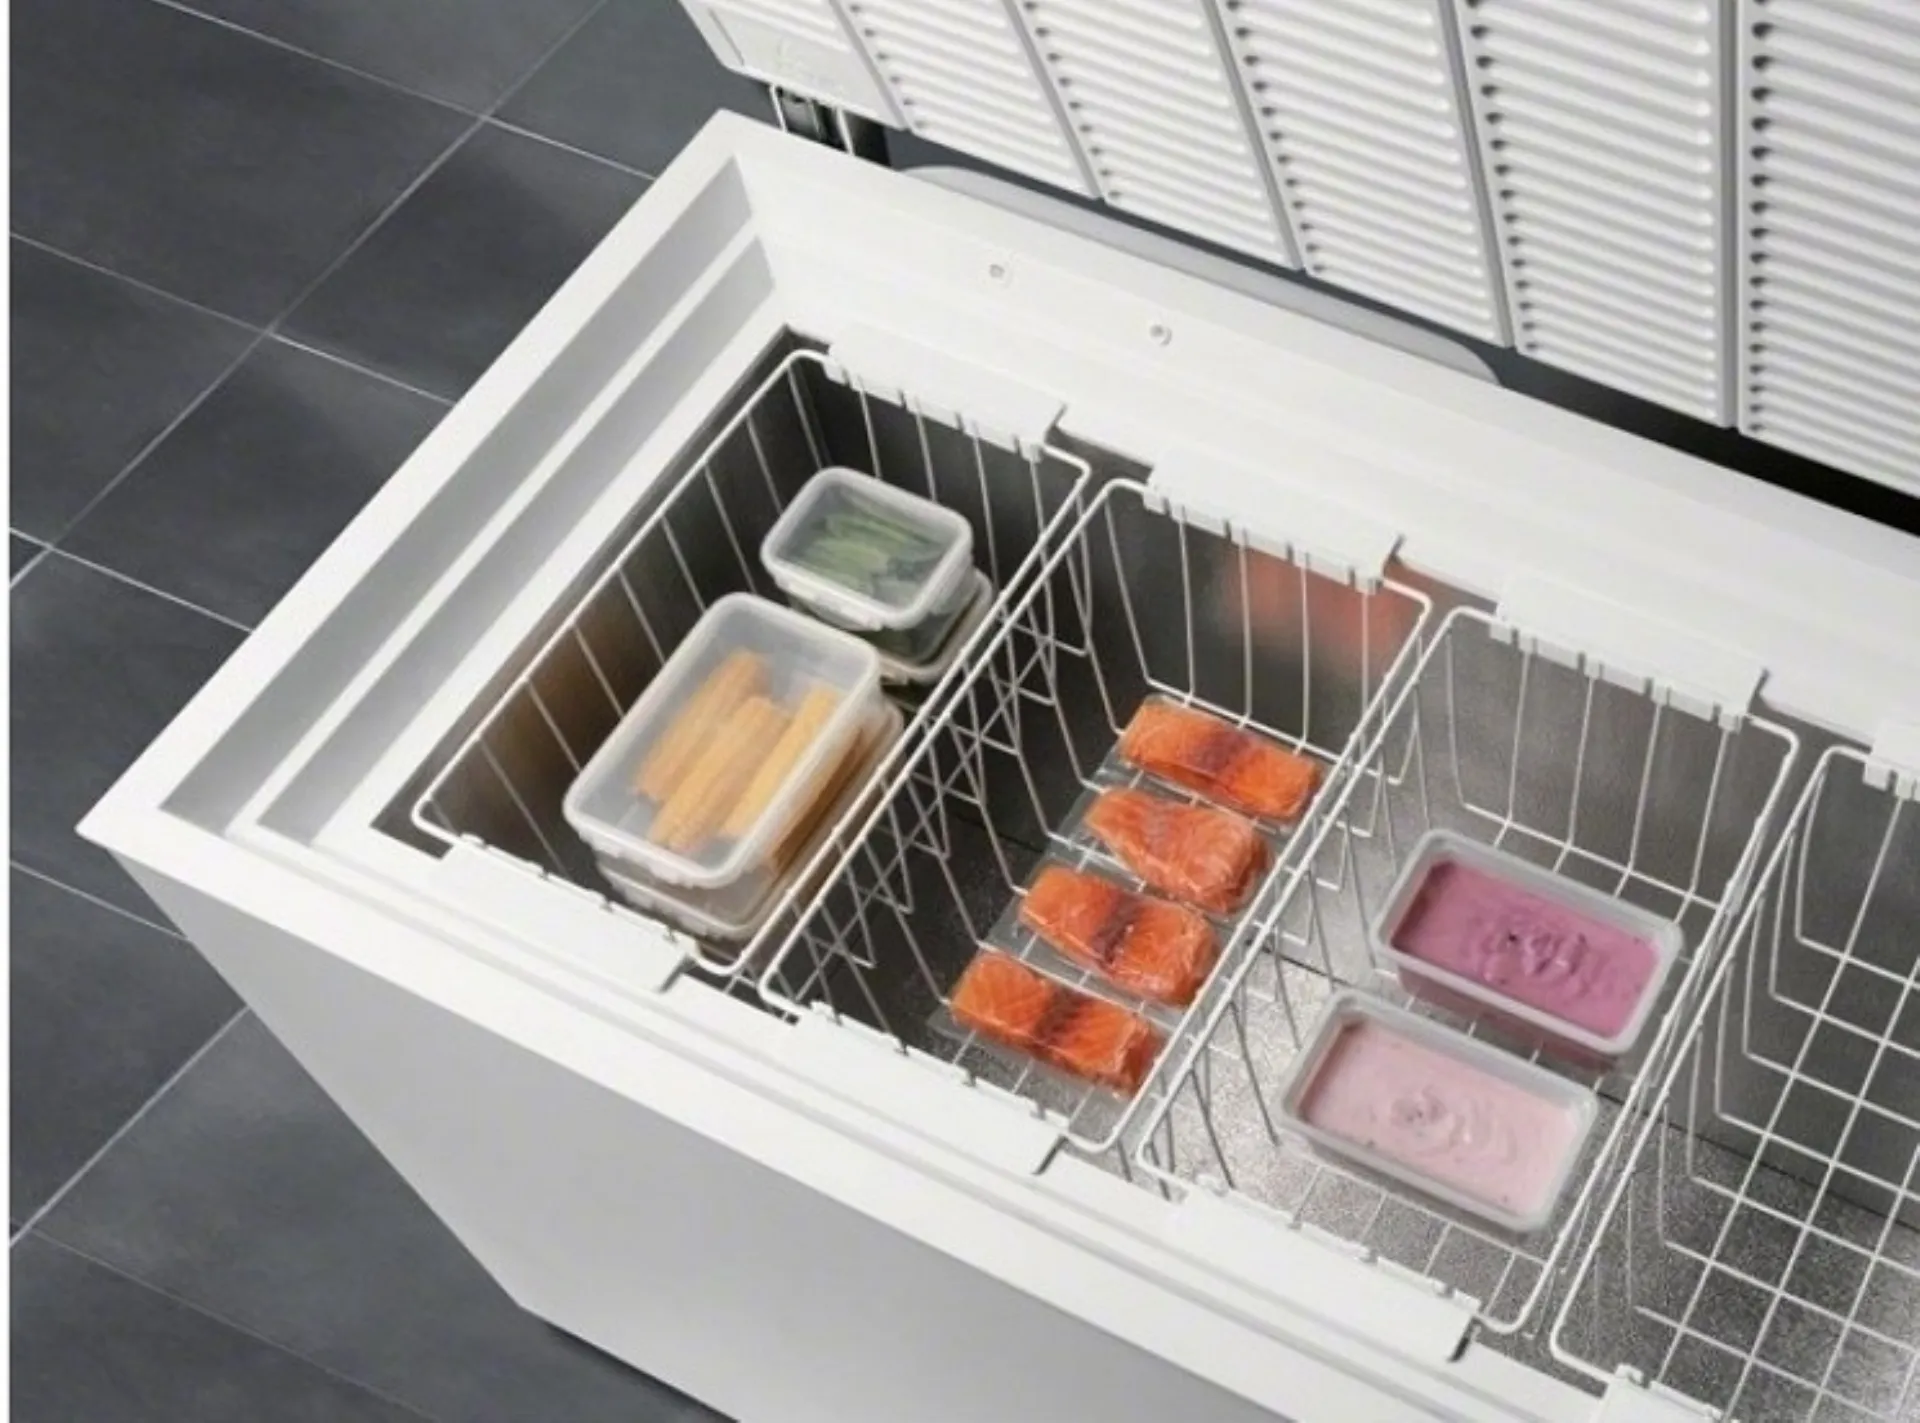 Come utilizzare un congelatore a pozzetto come frigorifero?